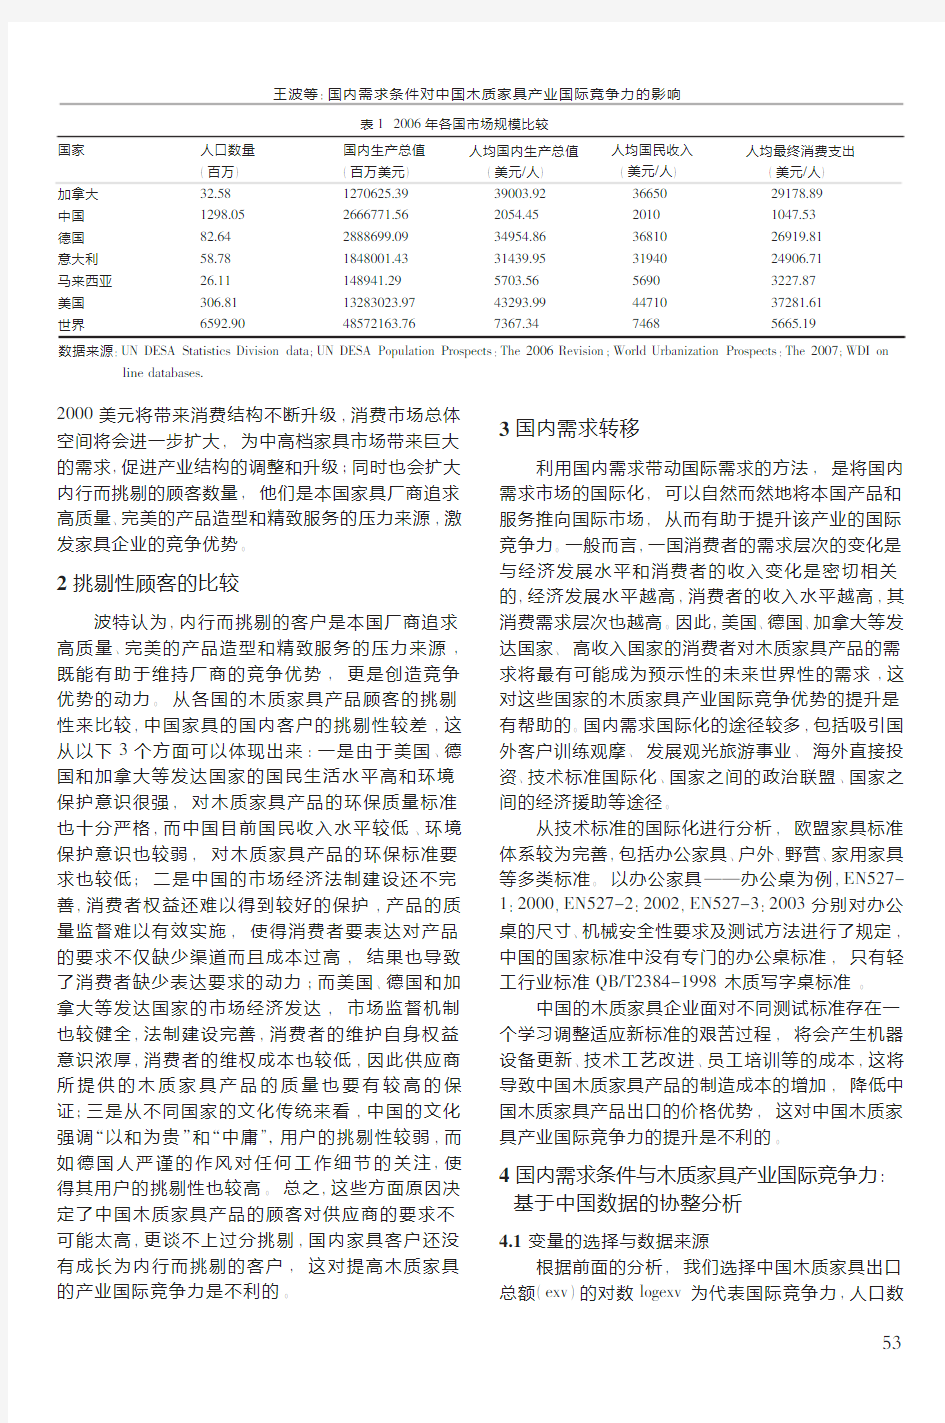 国内需求条件对中国木质家具产业国际竞争力的影响_基于中国数据的协整分析